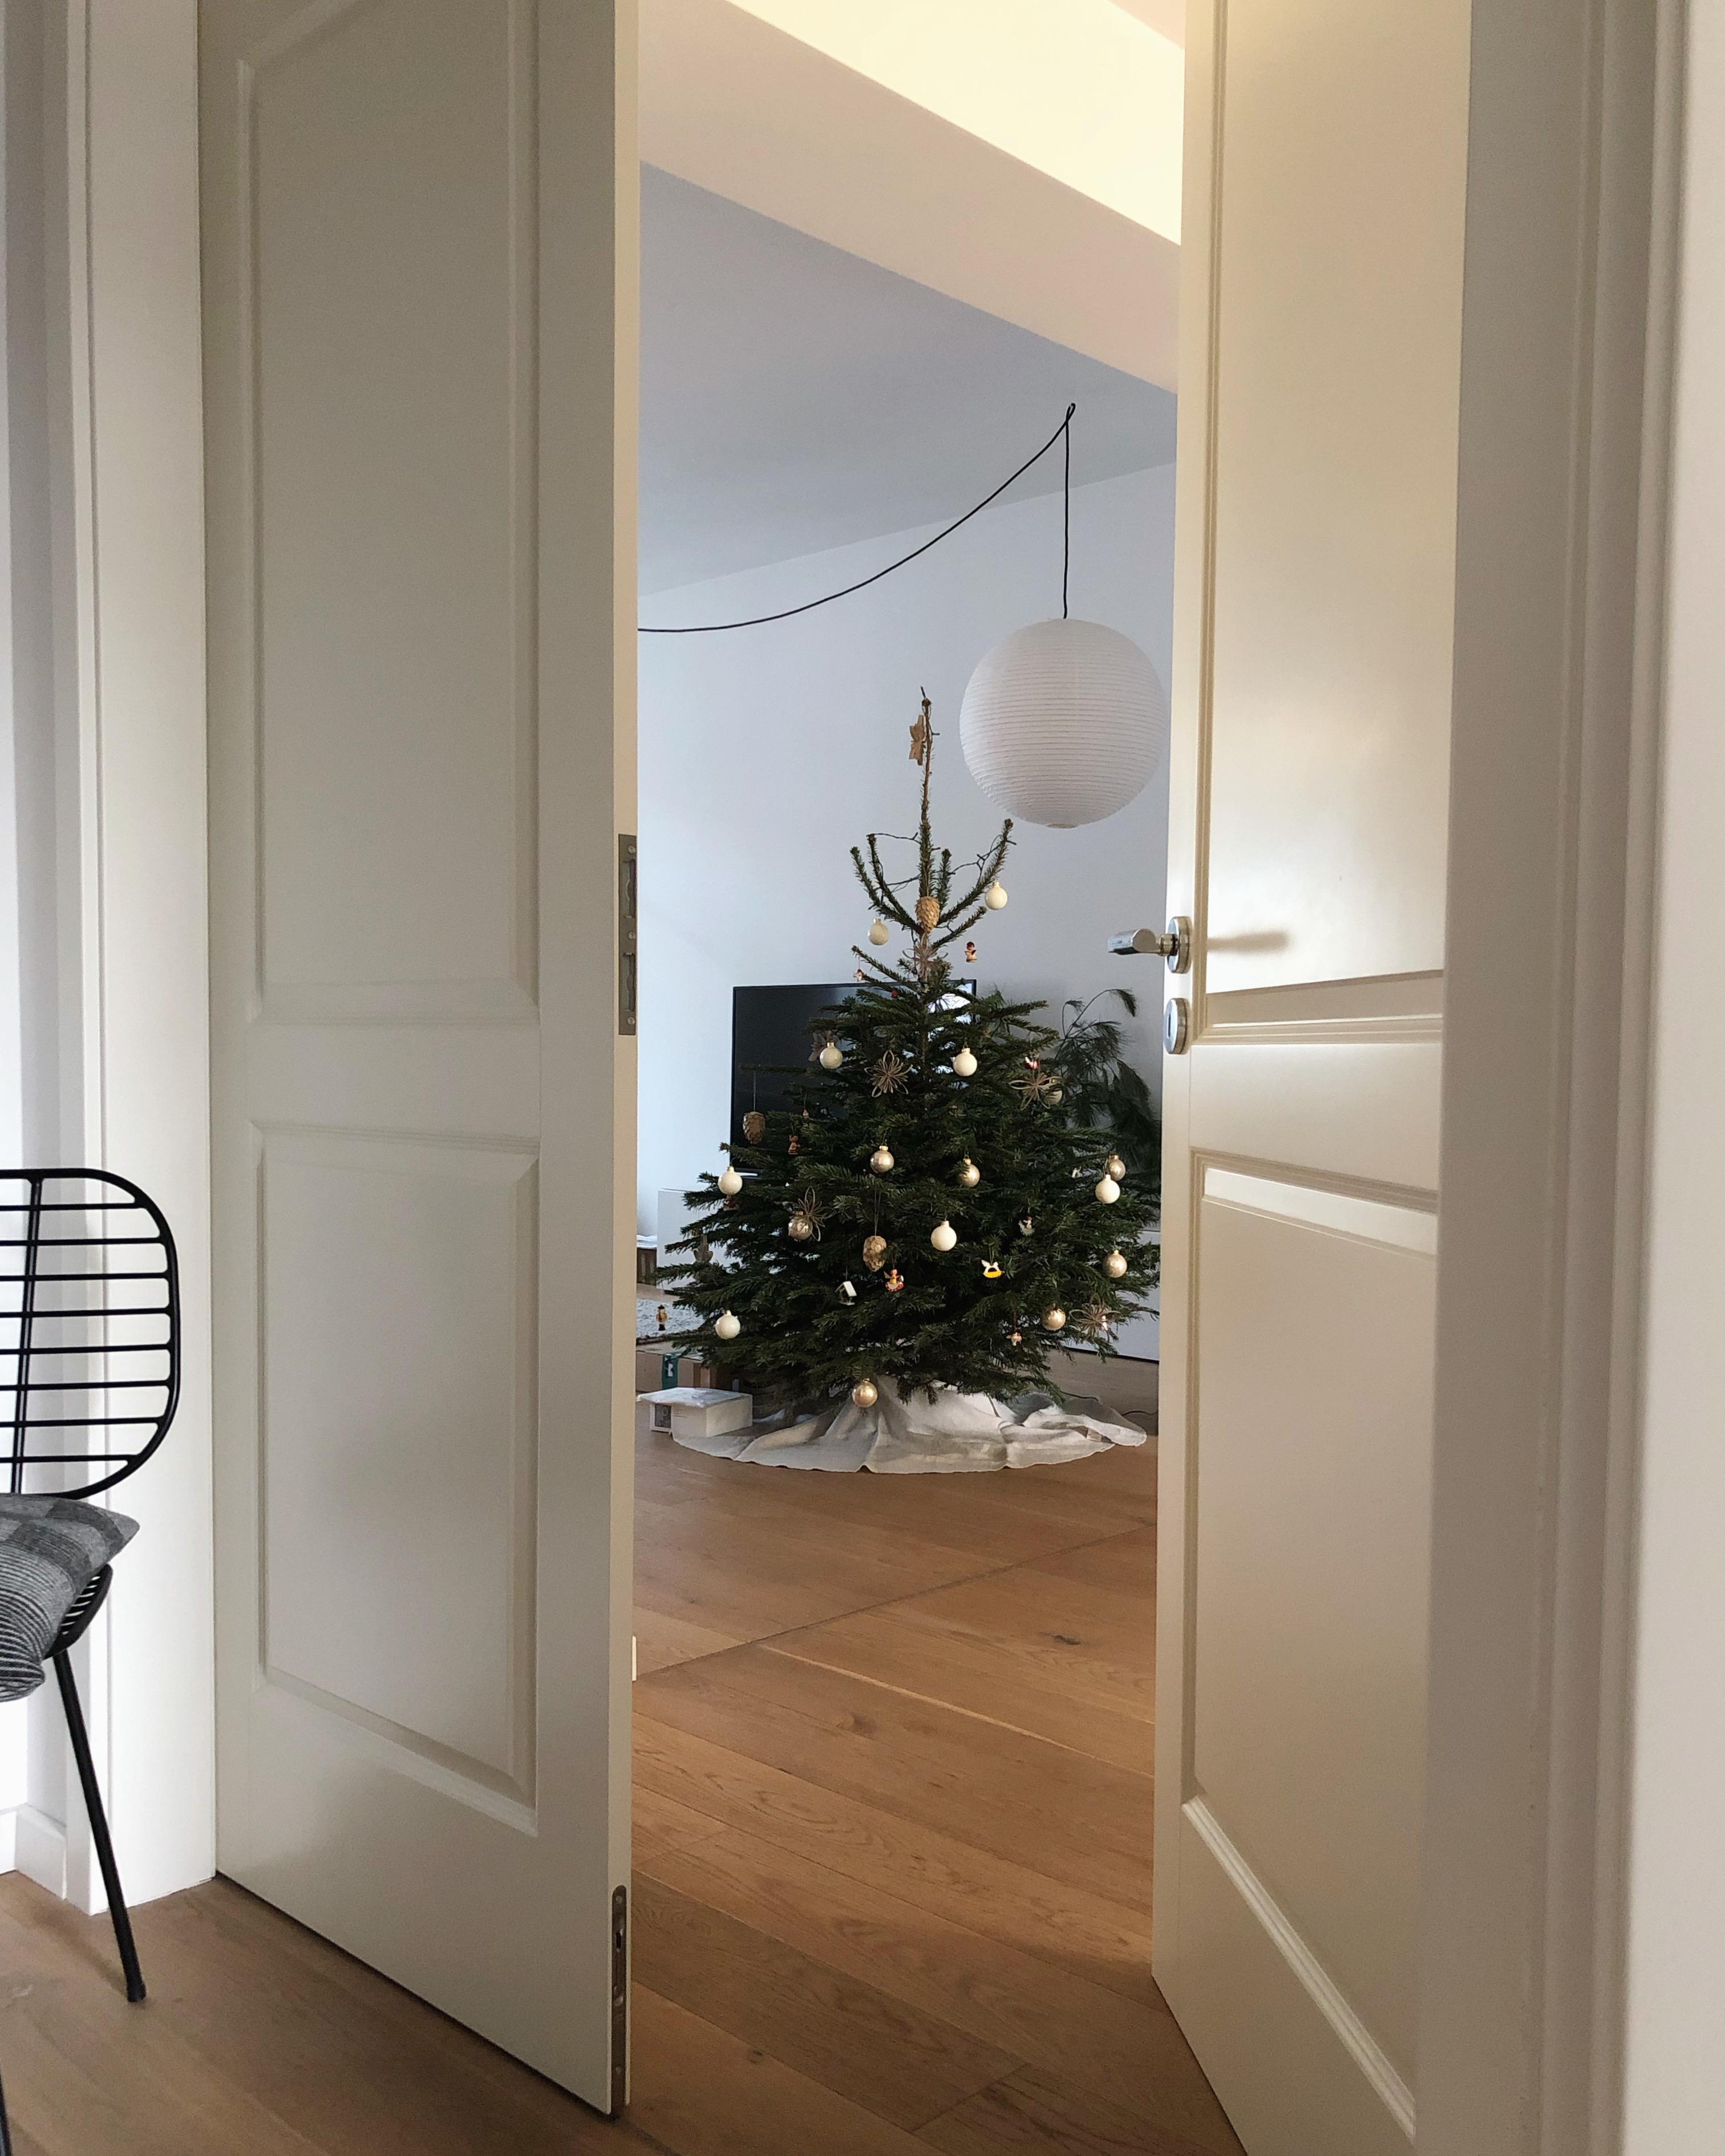 #weihnachten #weihnachtsbaum #christmas #silvester #happynewyear #wohnzimmer #livingroom #interior #couchstyle #scandi